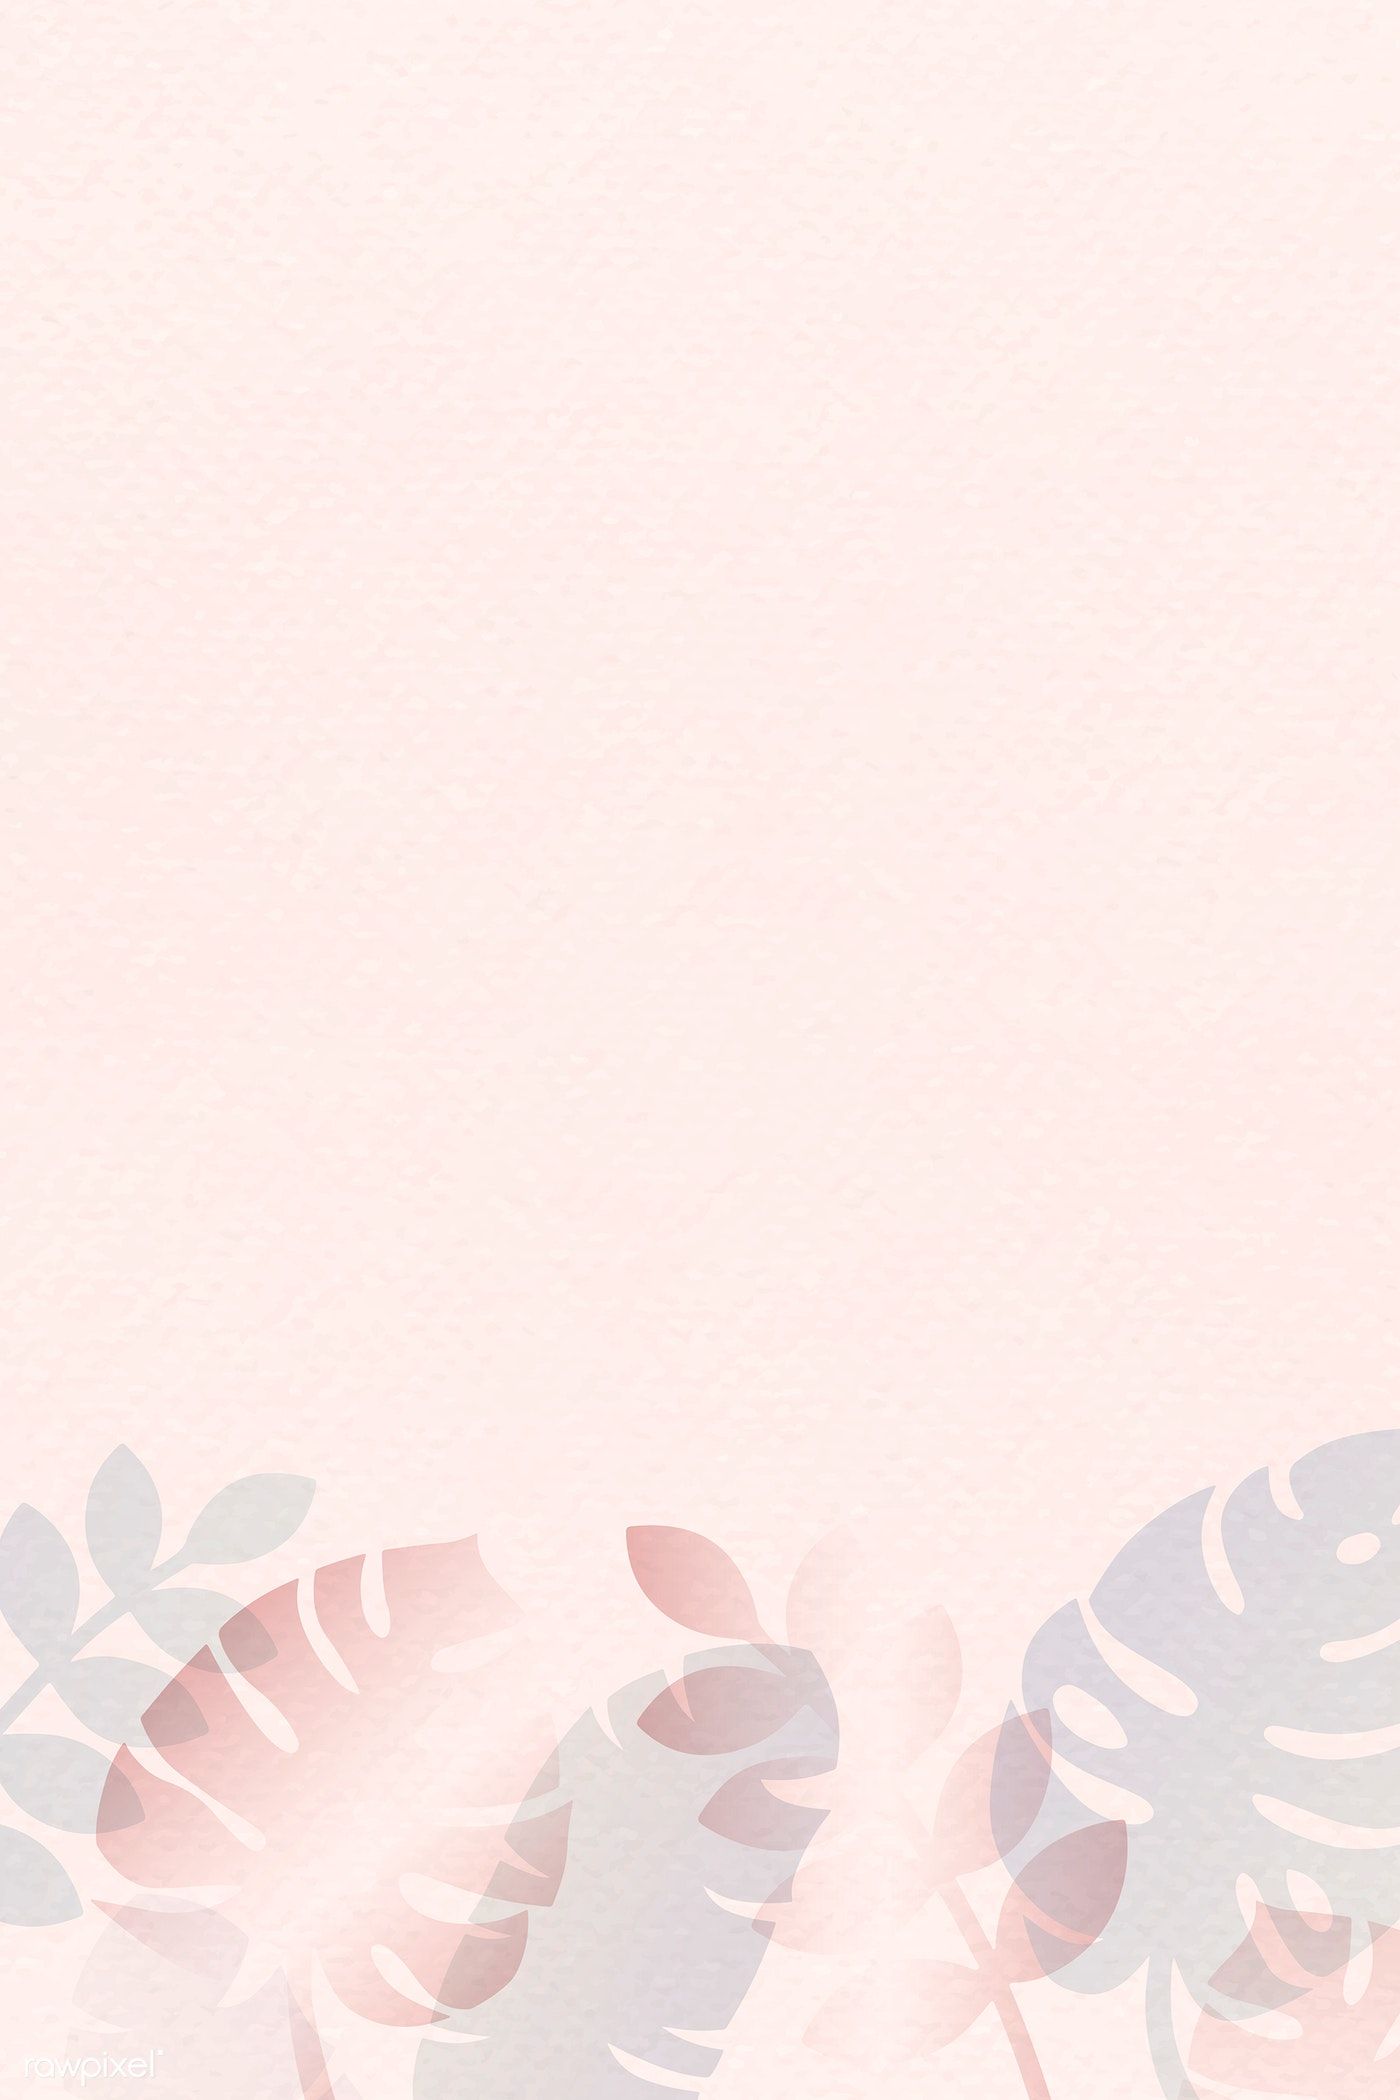 Detail Background Pink Pastel Nomer 16